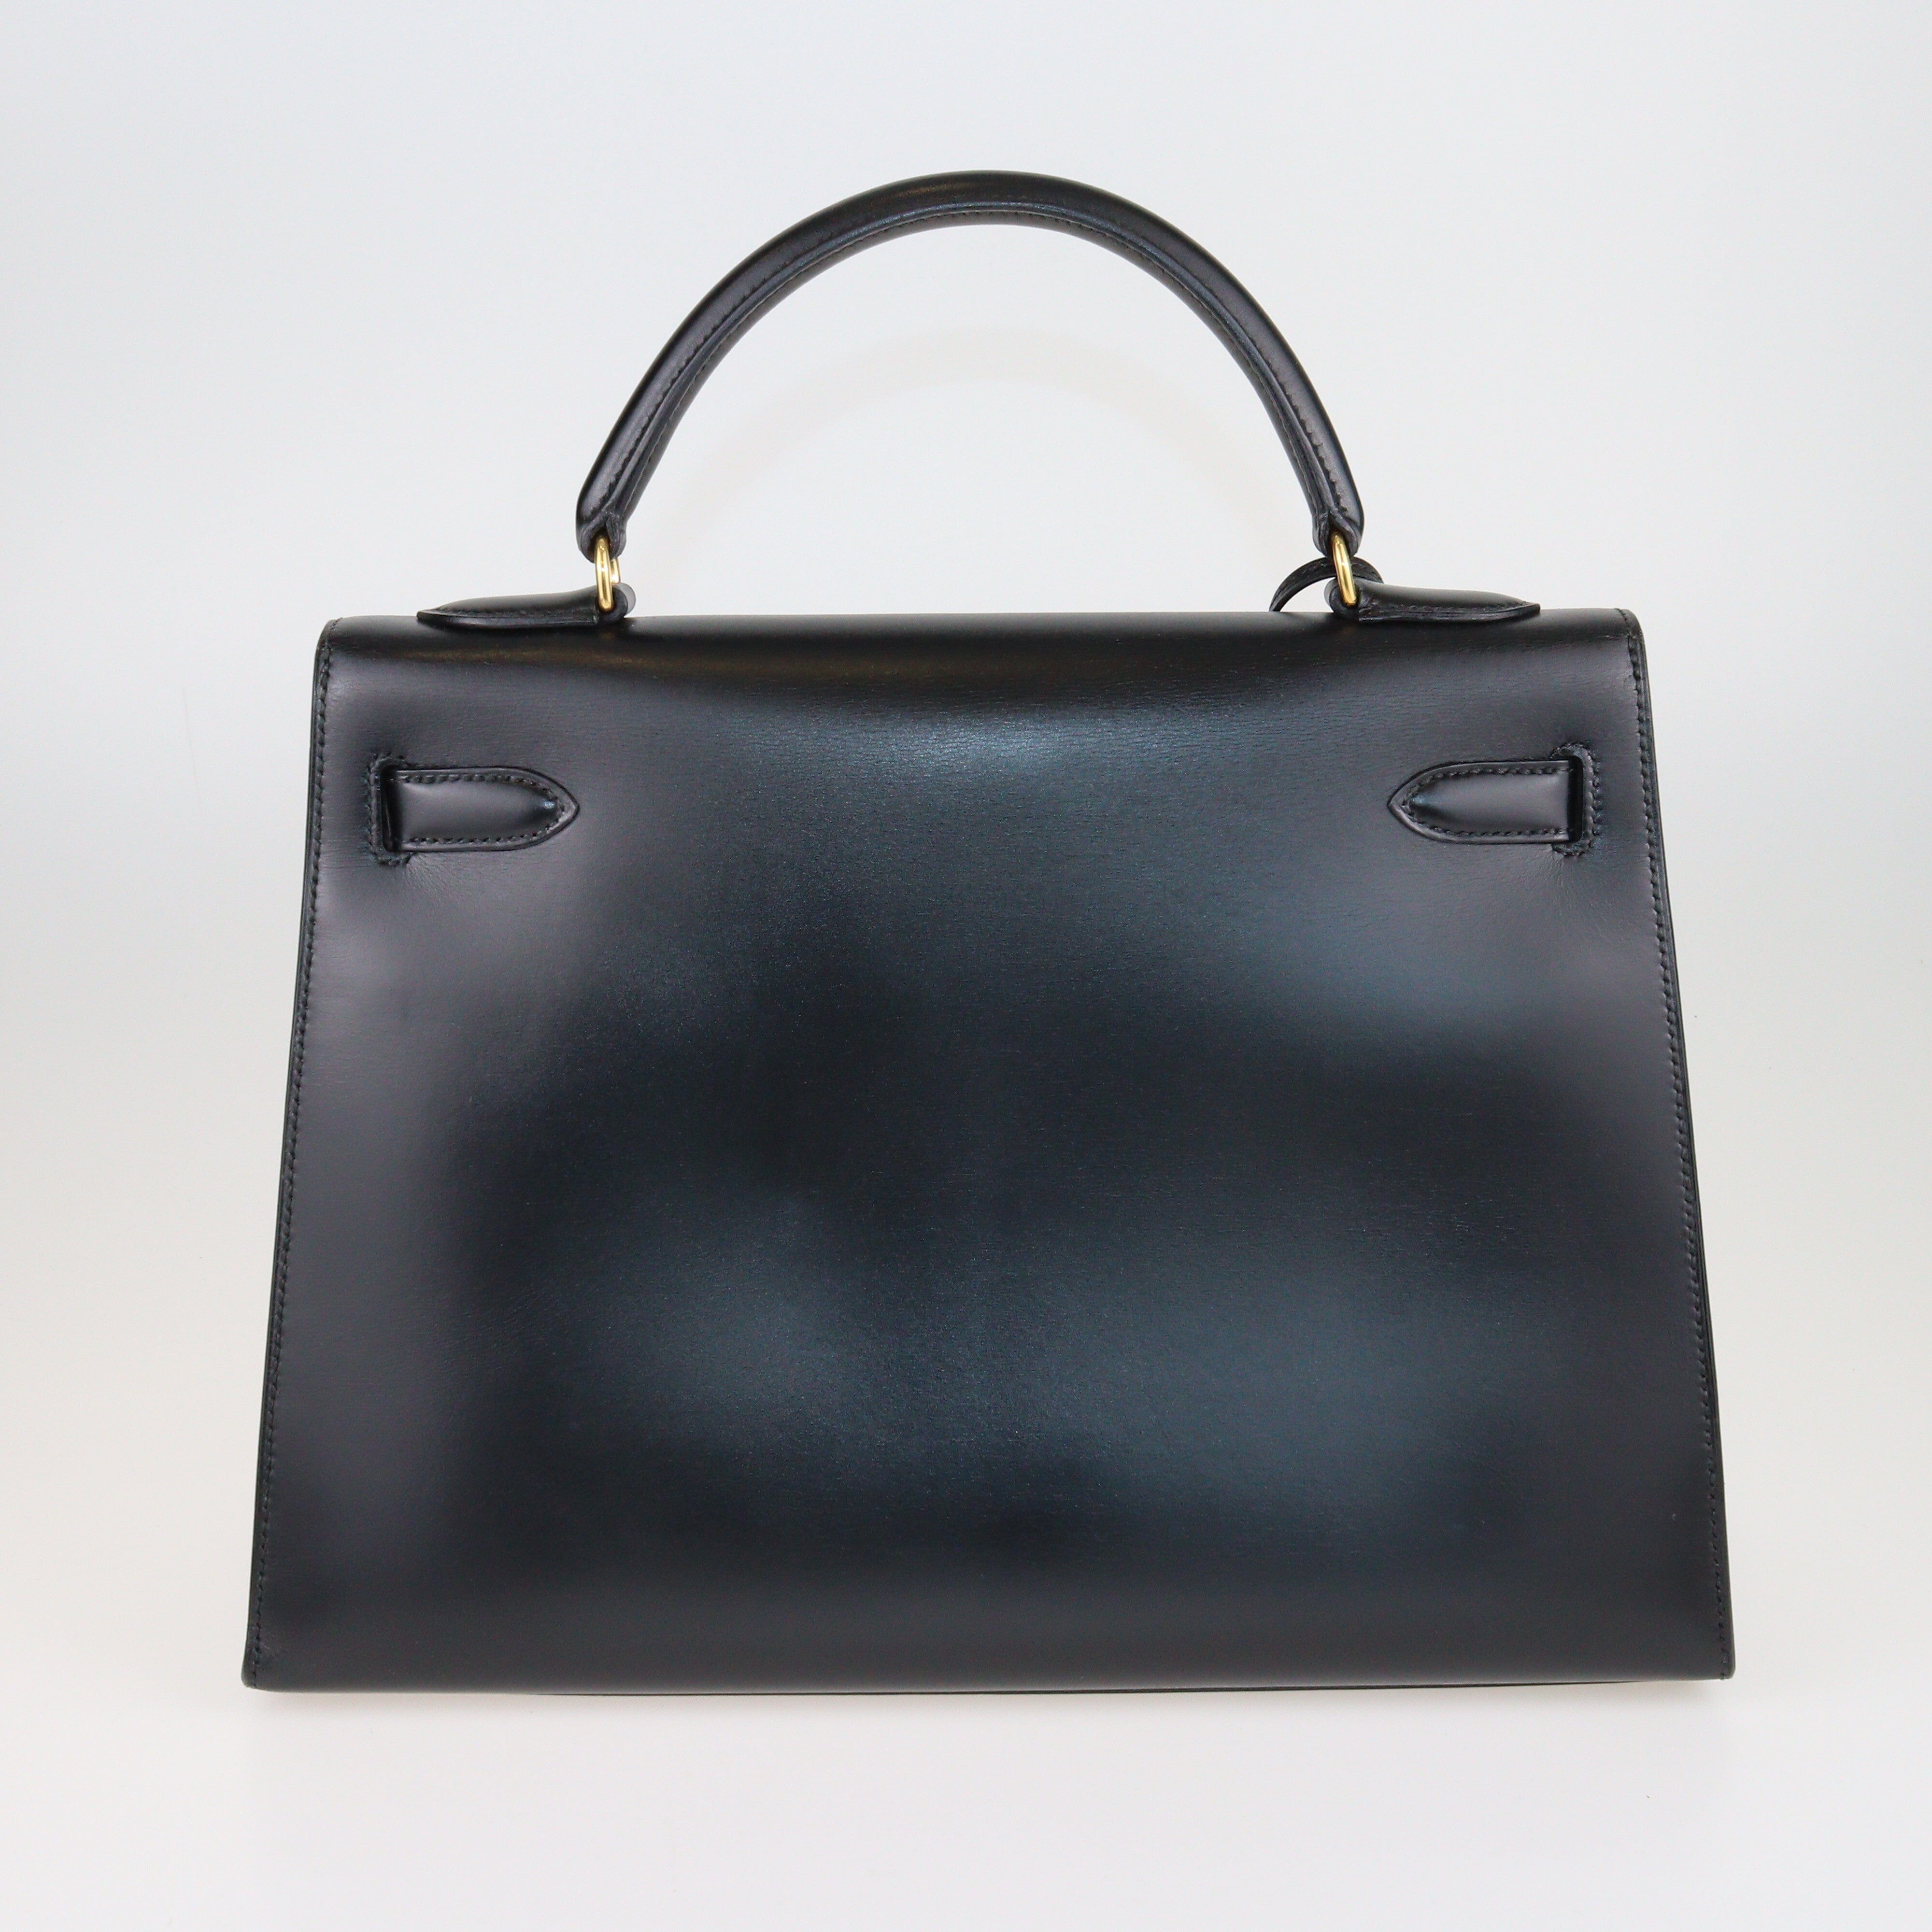 Black Box Calf Kelly Sellier 32 GHW Bag Bags Hermes 